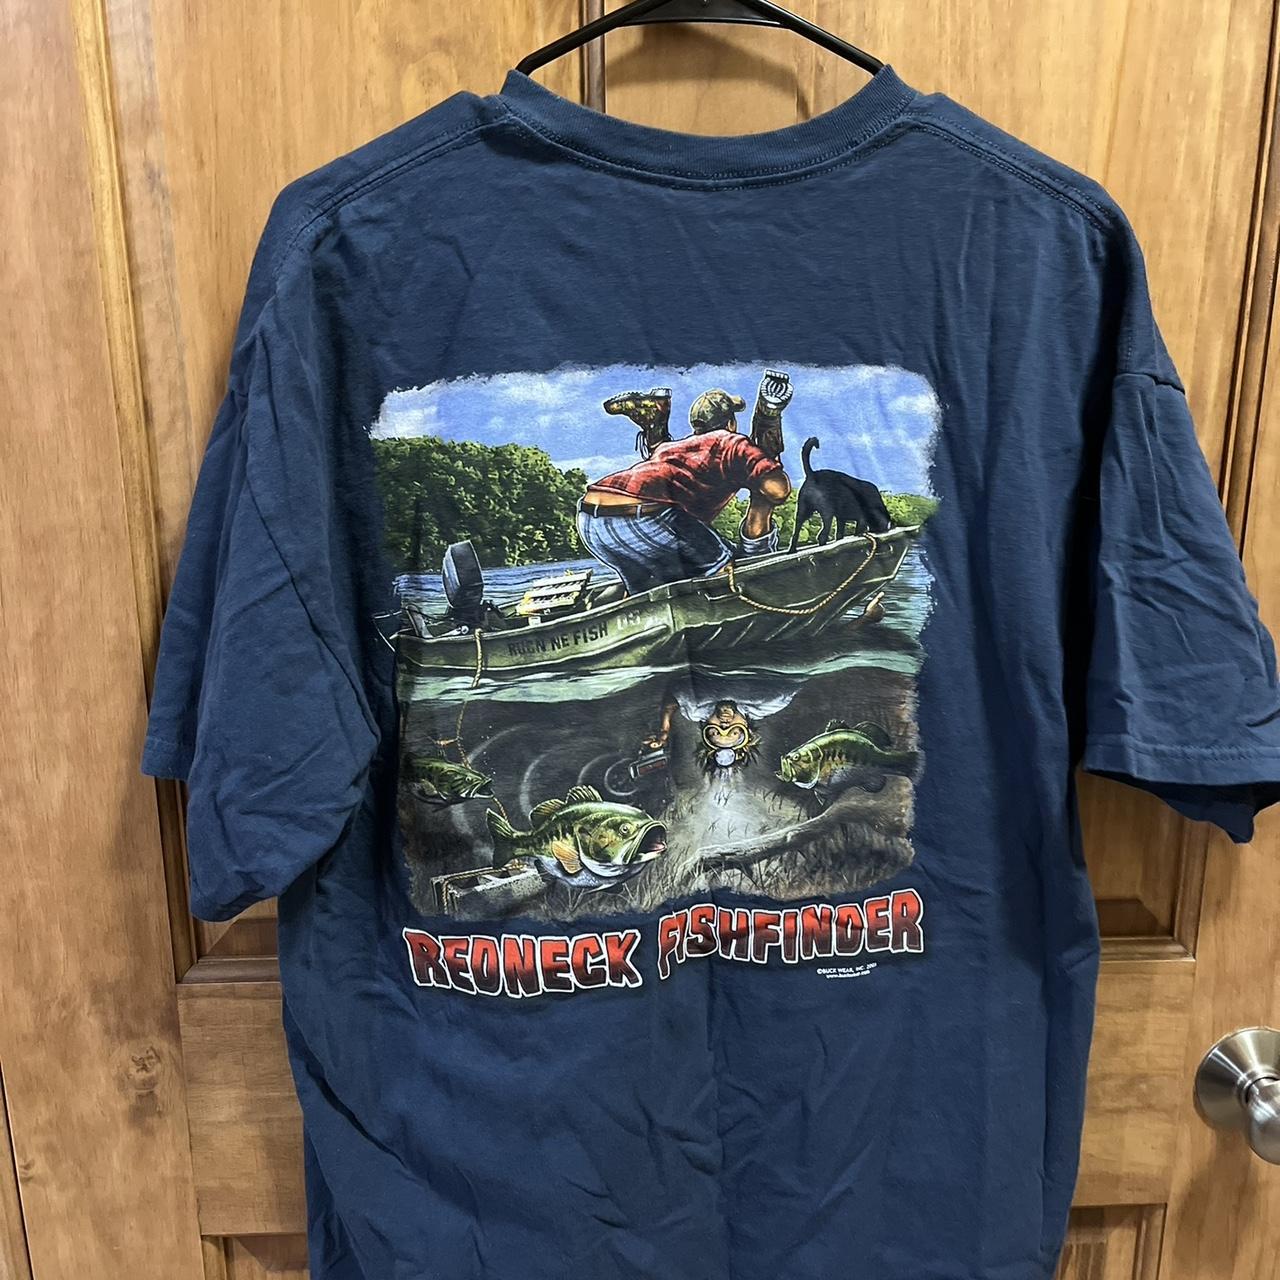 Redneck Fishfinder T Shirt XL, #redneck #fish